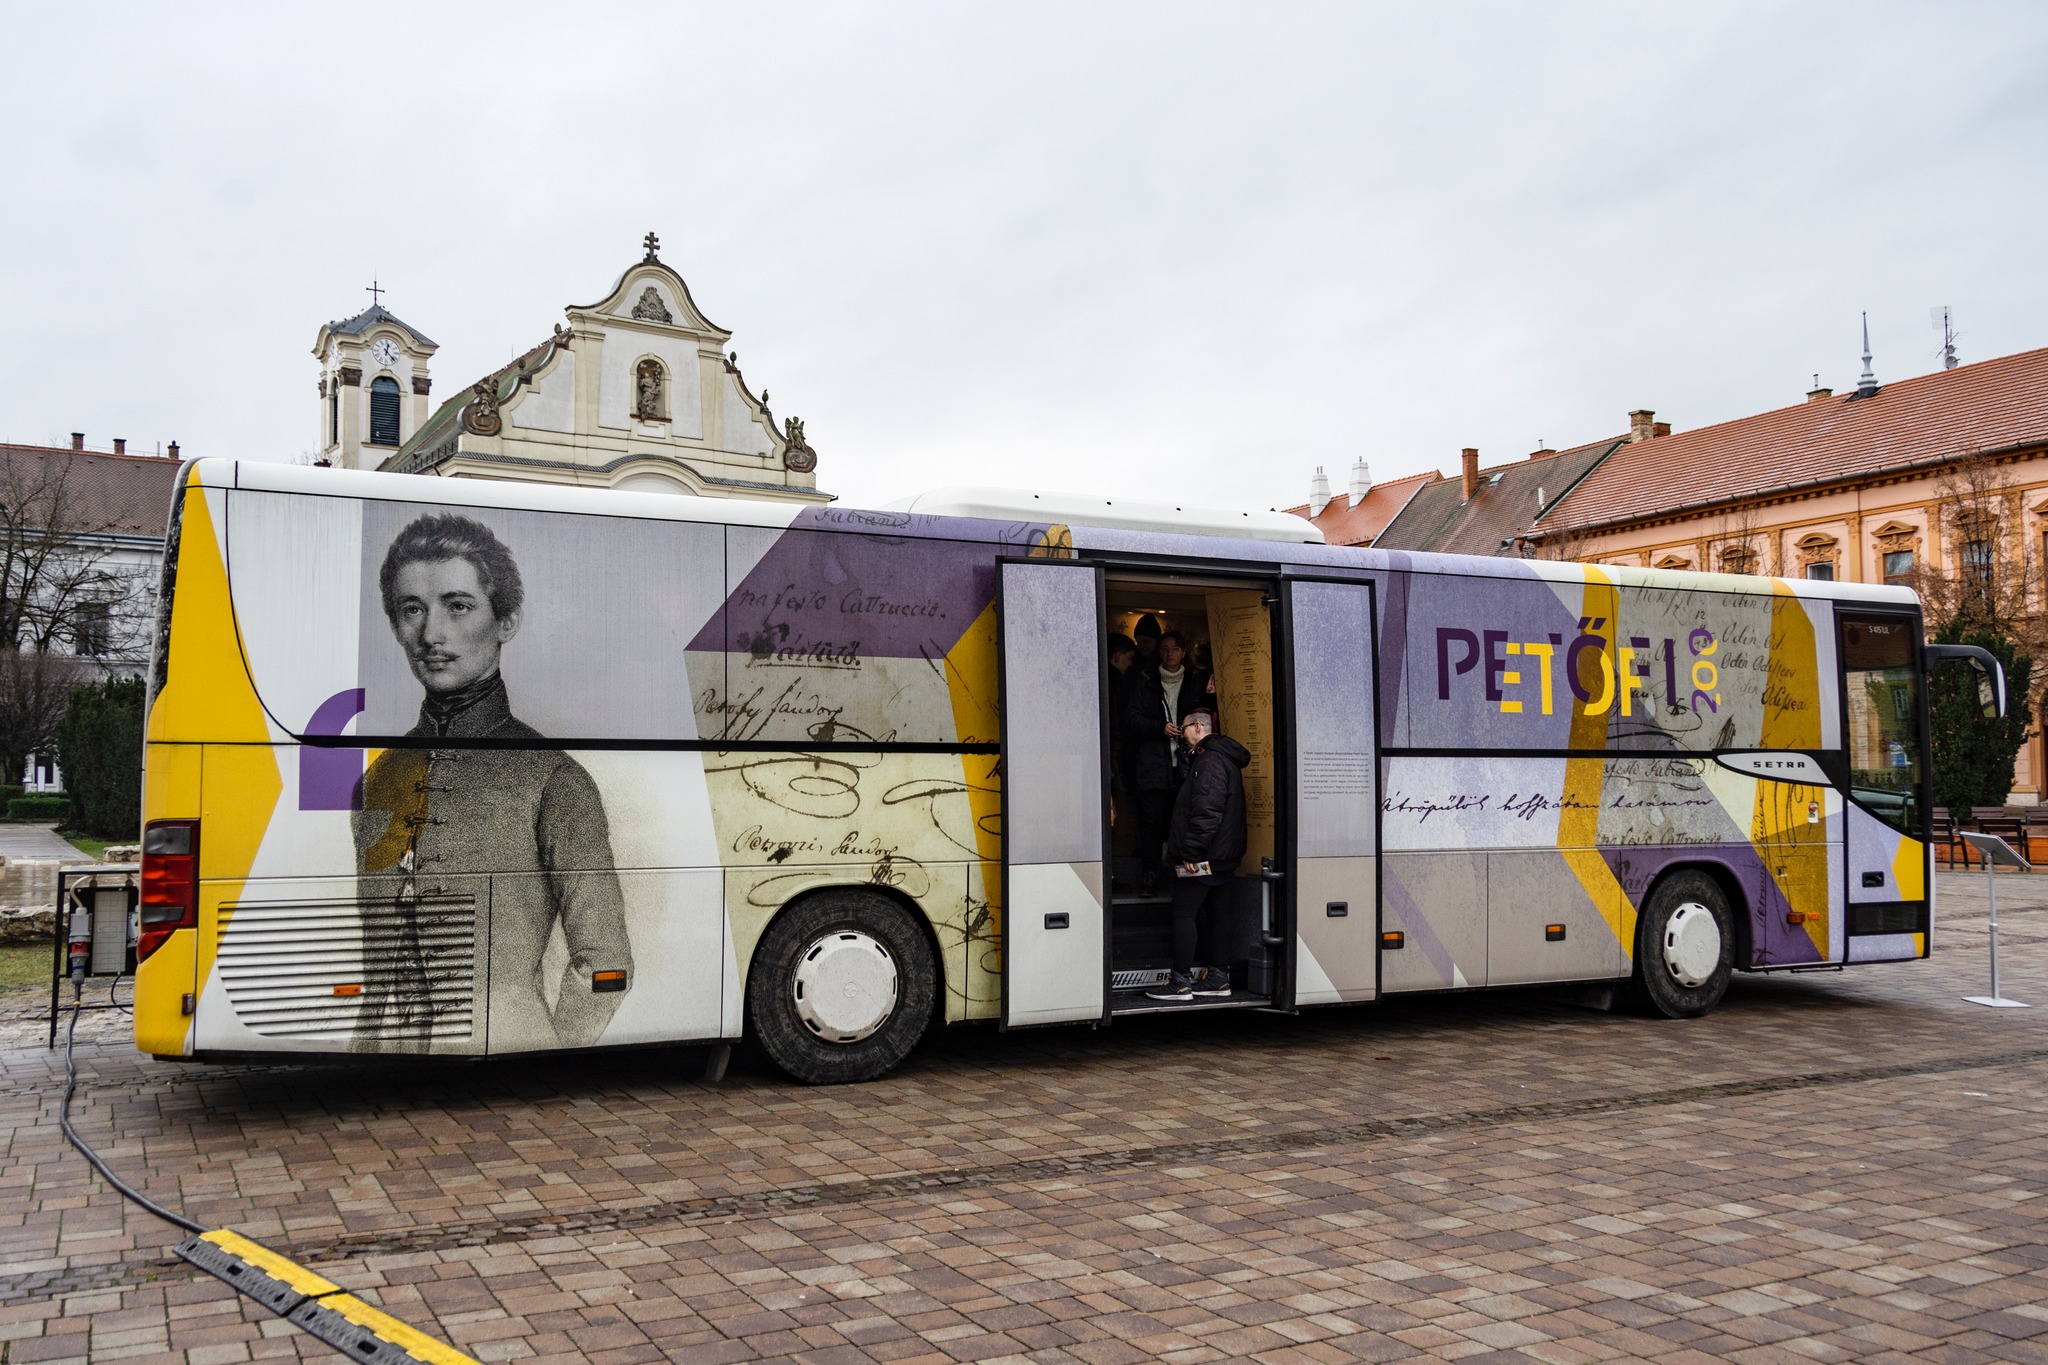 Hétfőn még megtekinthető a Petőfi múzeum-busz